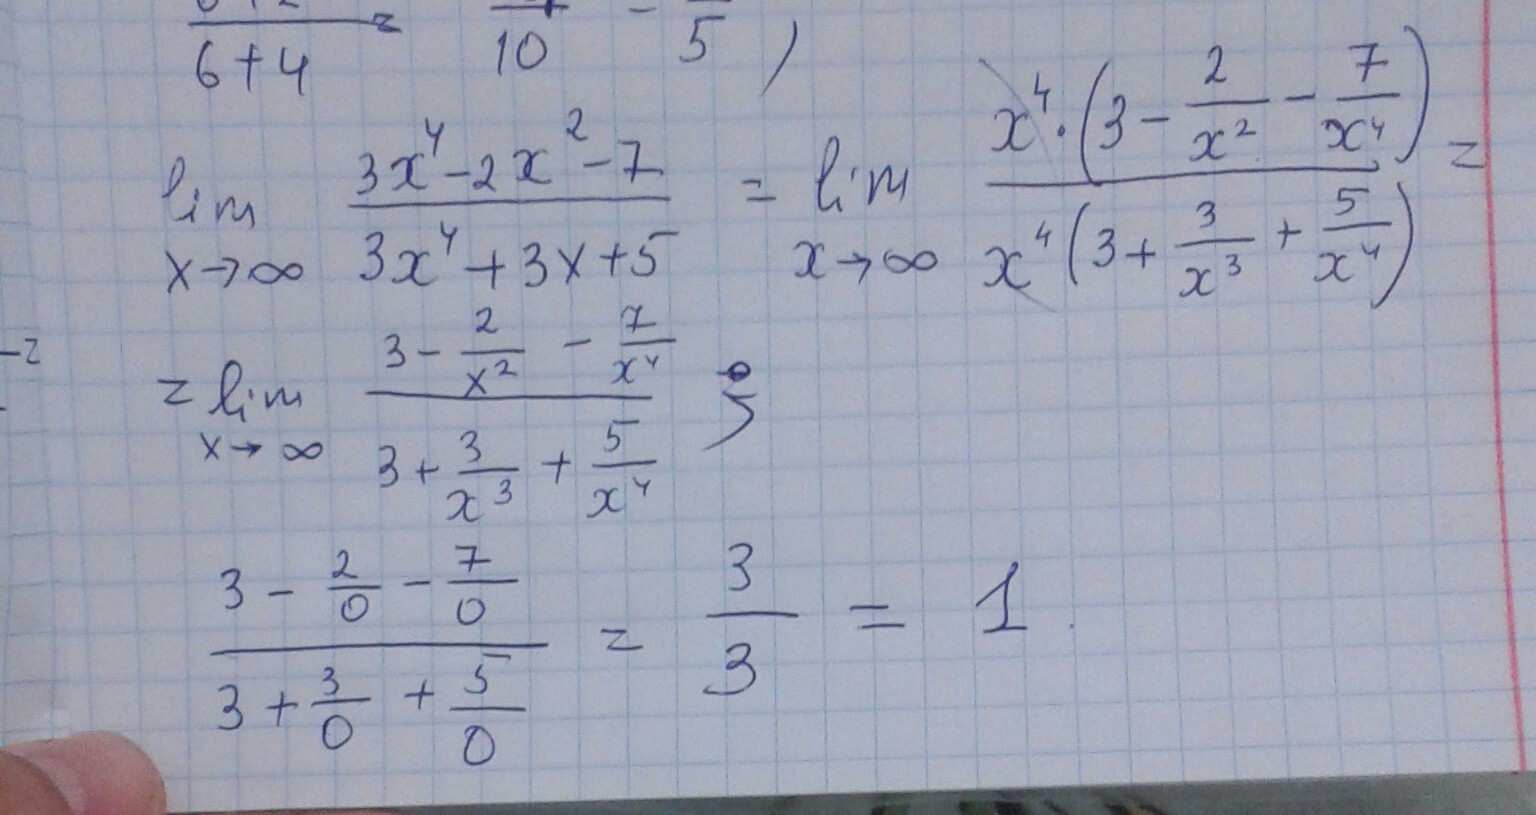 X2 21 10 x. Lim x стремится к бесконечности 2/x 2+3x. Lim x стремится к бесконечности x^2-4x+3/x+5. Lim x стремиться к бесконечности ( 2x/2x-3)^3x. Lim x стремится к бесконечности 3+x-5x4.